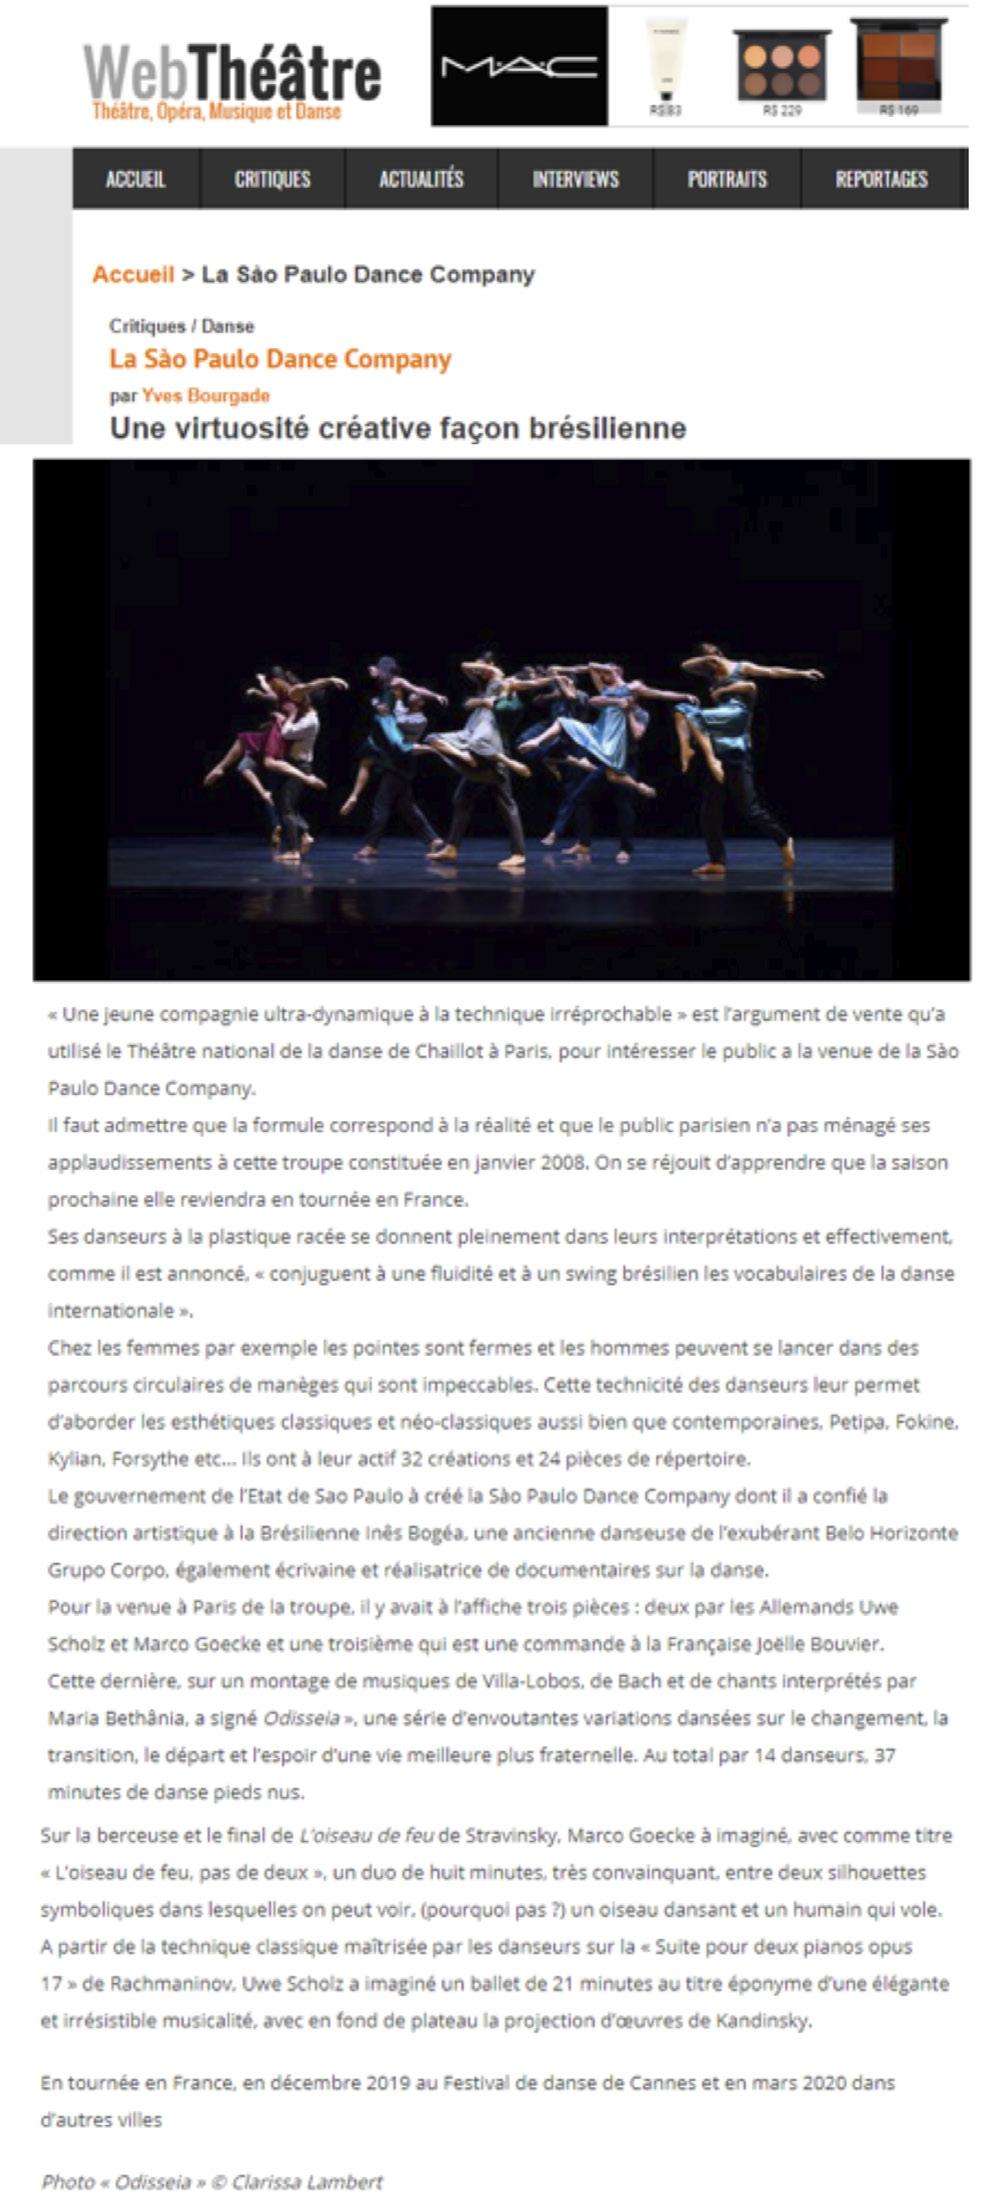 Uma jovem companhia ultradinâmica e com uma técnica impecável é o argumento de venda que o Théâtre National de Chaillot usou para interessar o público sobre a vinda da São Paulo Companhia de Dança.